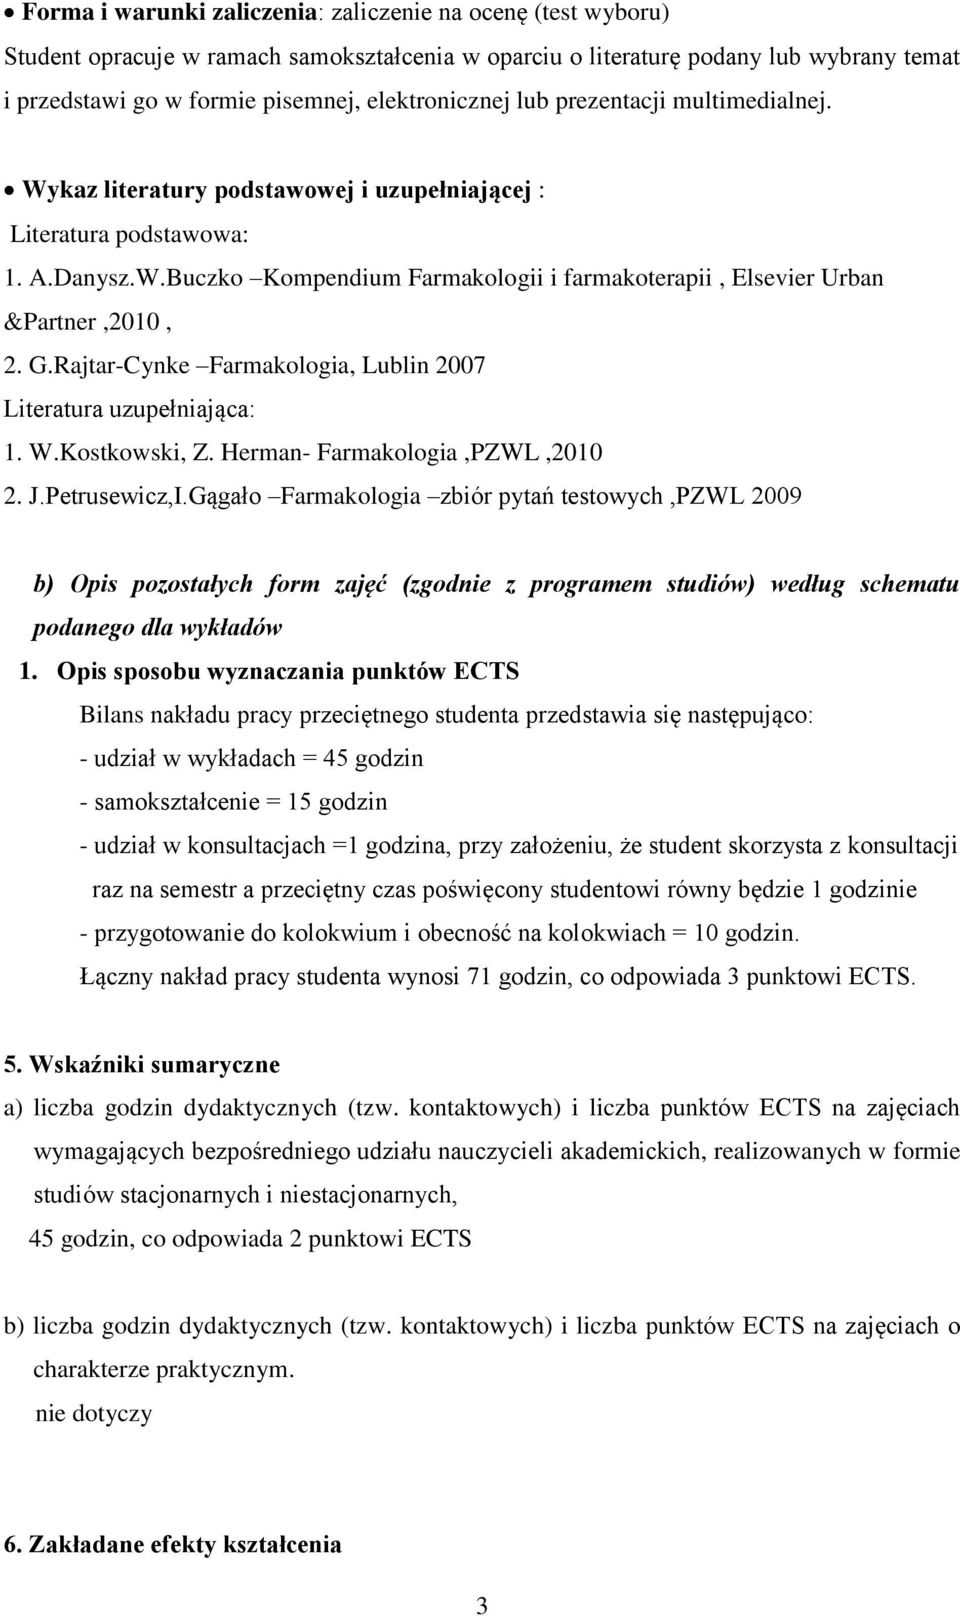 Rajtar-Cynke Farmakologia, Lublin 2007 Literatura uzupełniająca: 1. W.Kostkowski, Z. Herman- Farmakologia,PZWL,2010 2. J.Petrusewicz,I.